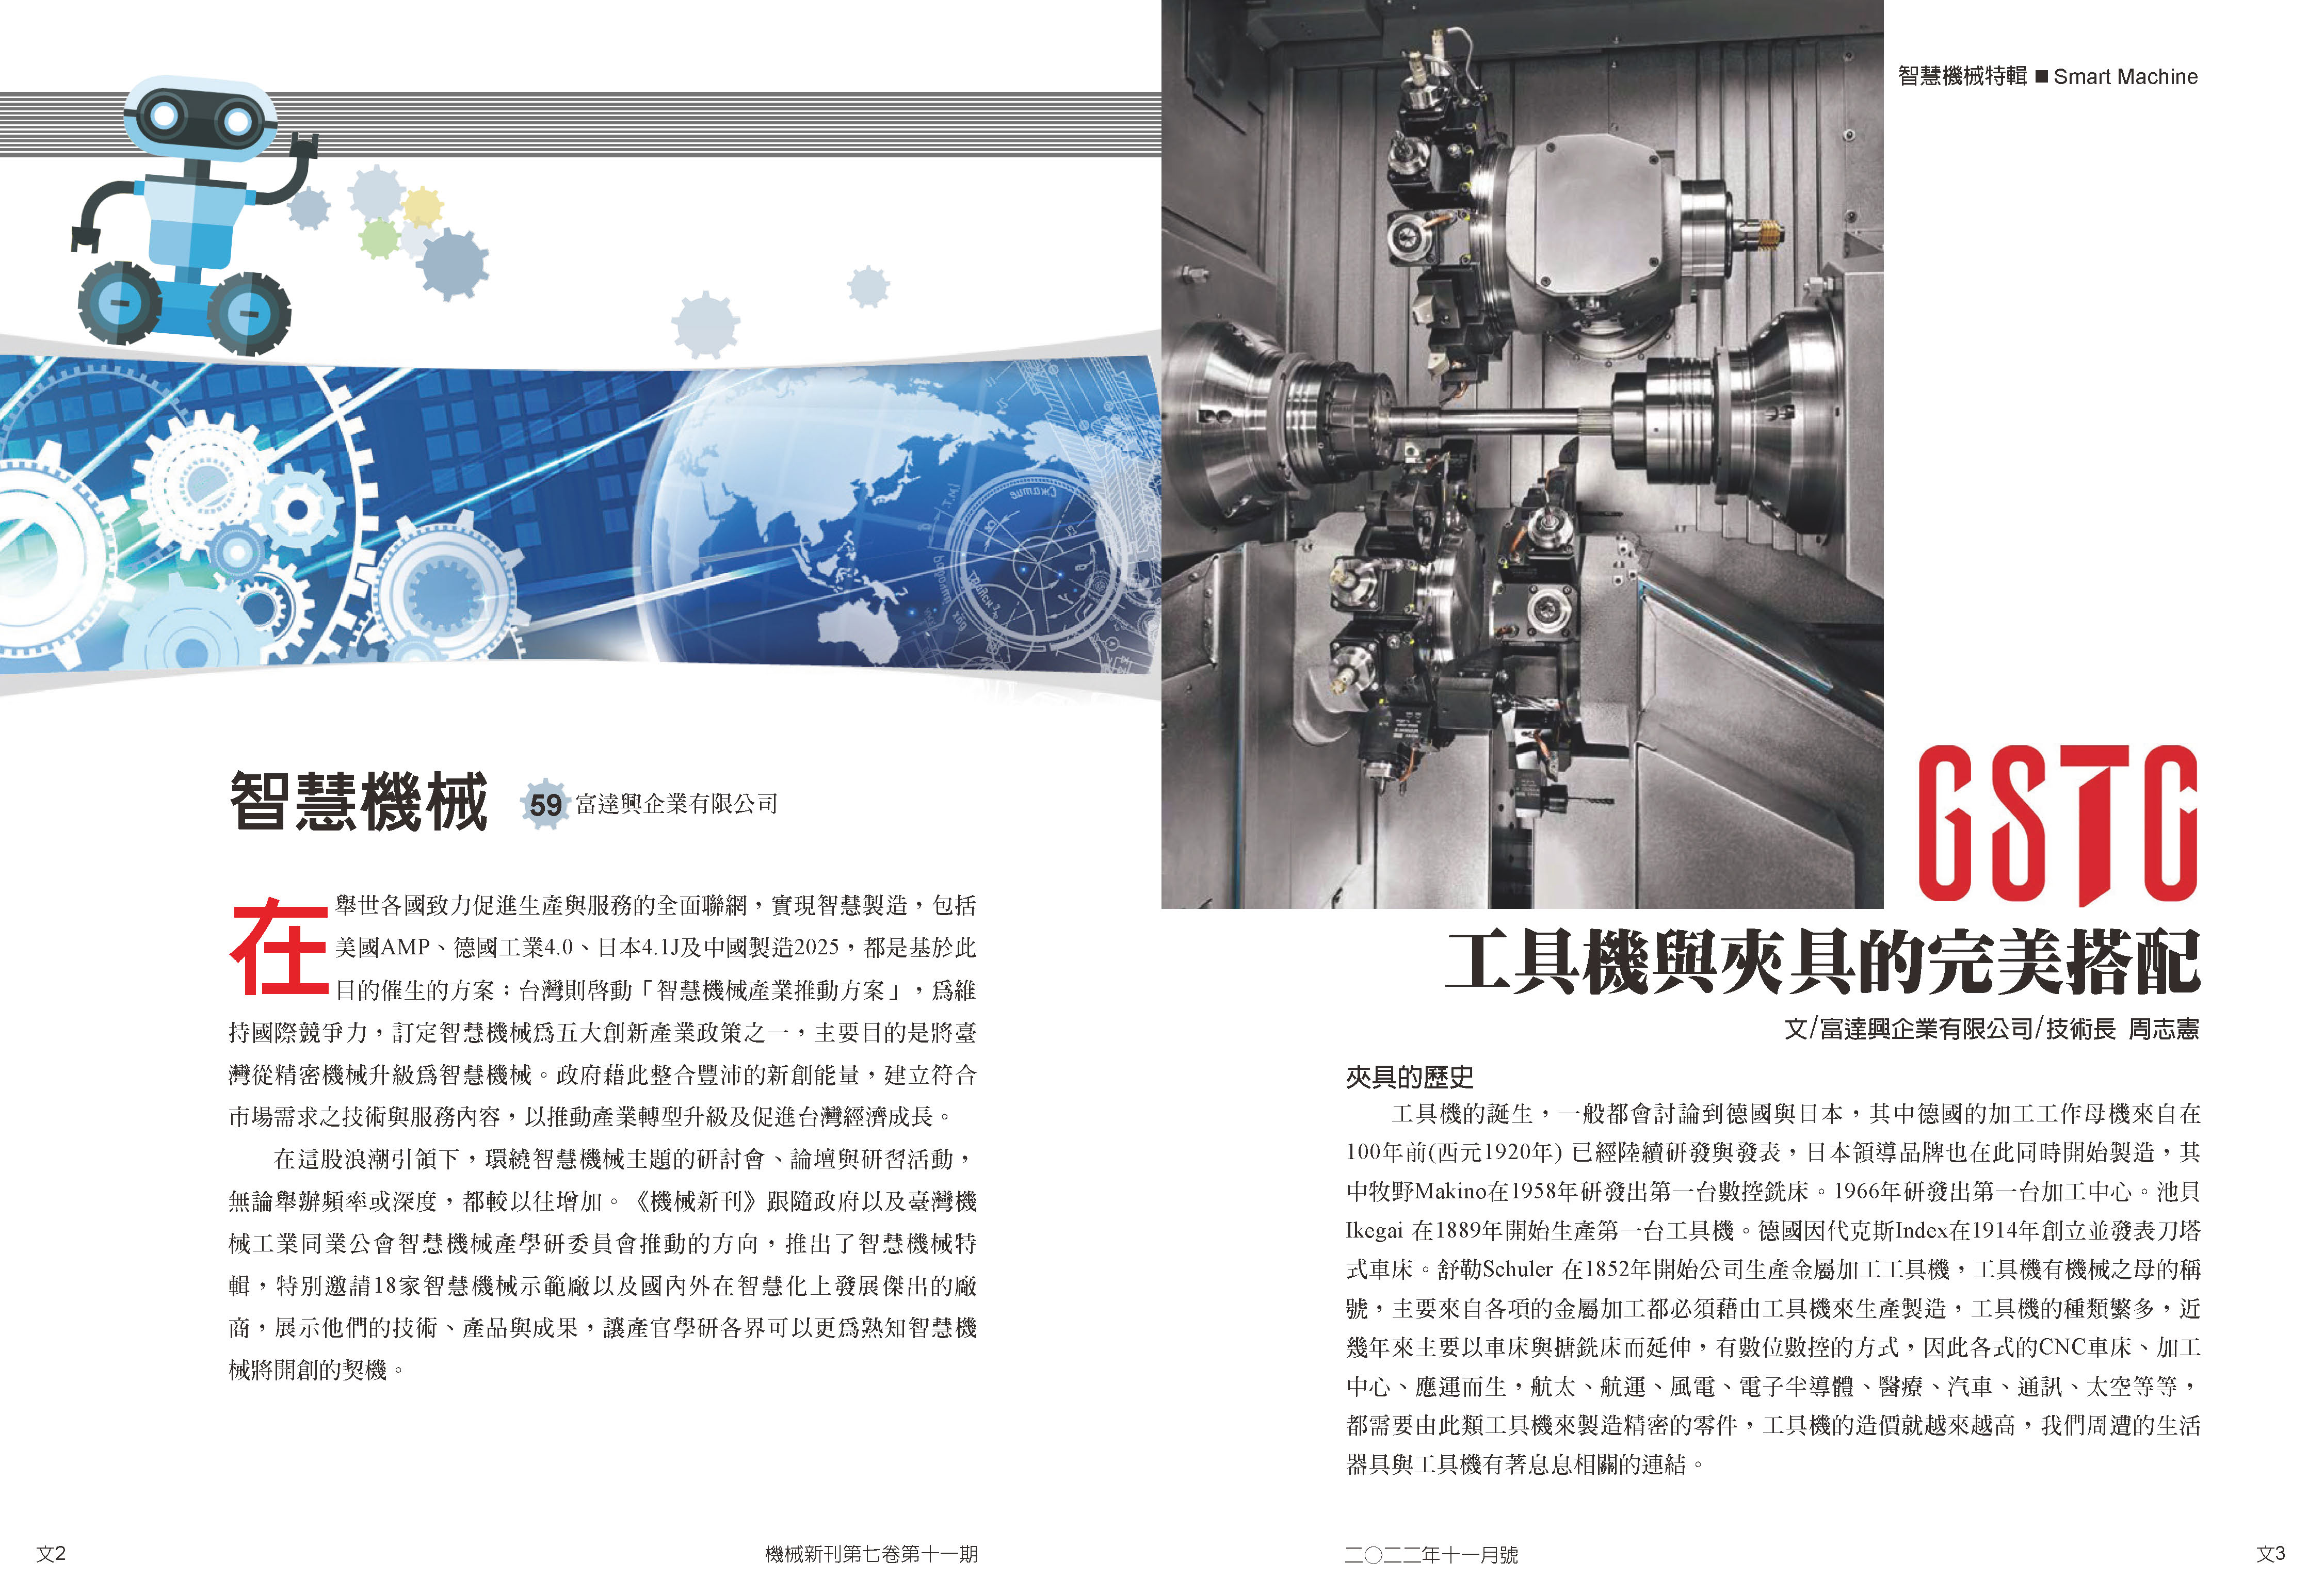 GSTC x 機械新刊 專題報導 - 智慧機械 工具機與夾具的完美配合。